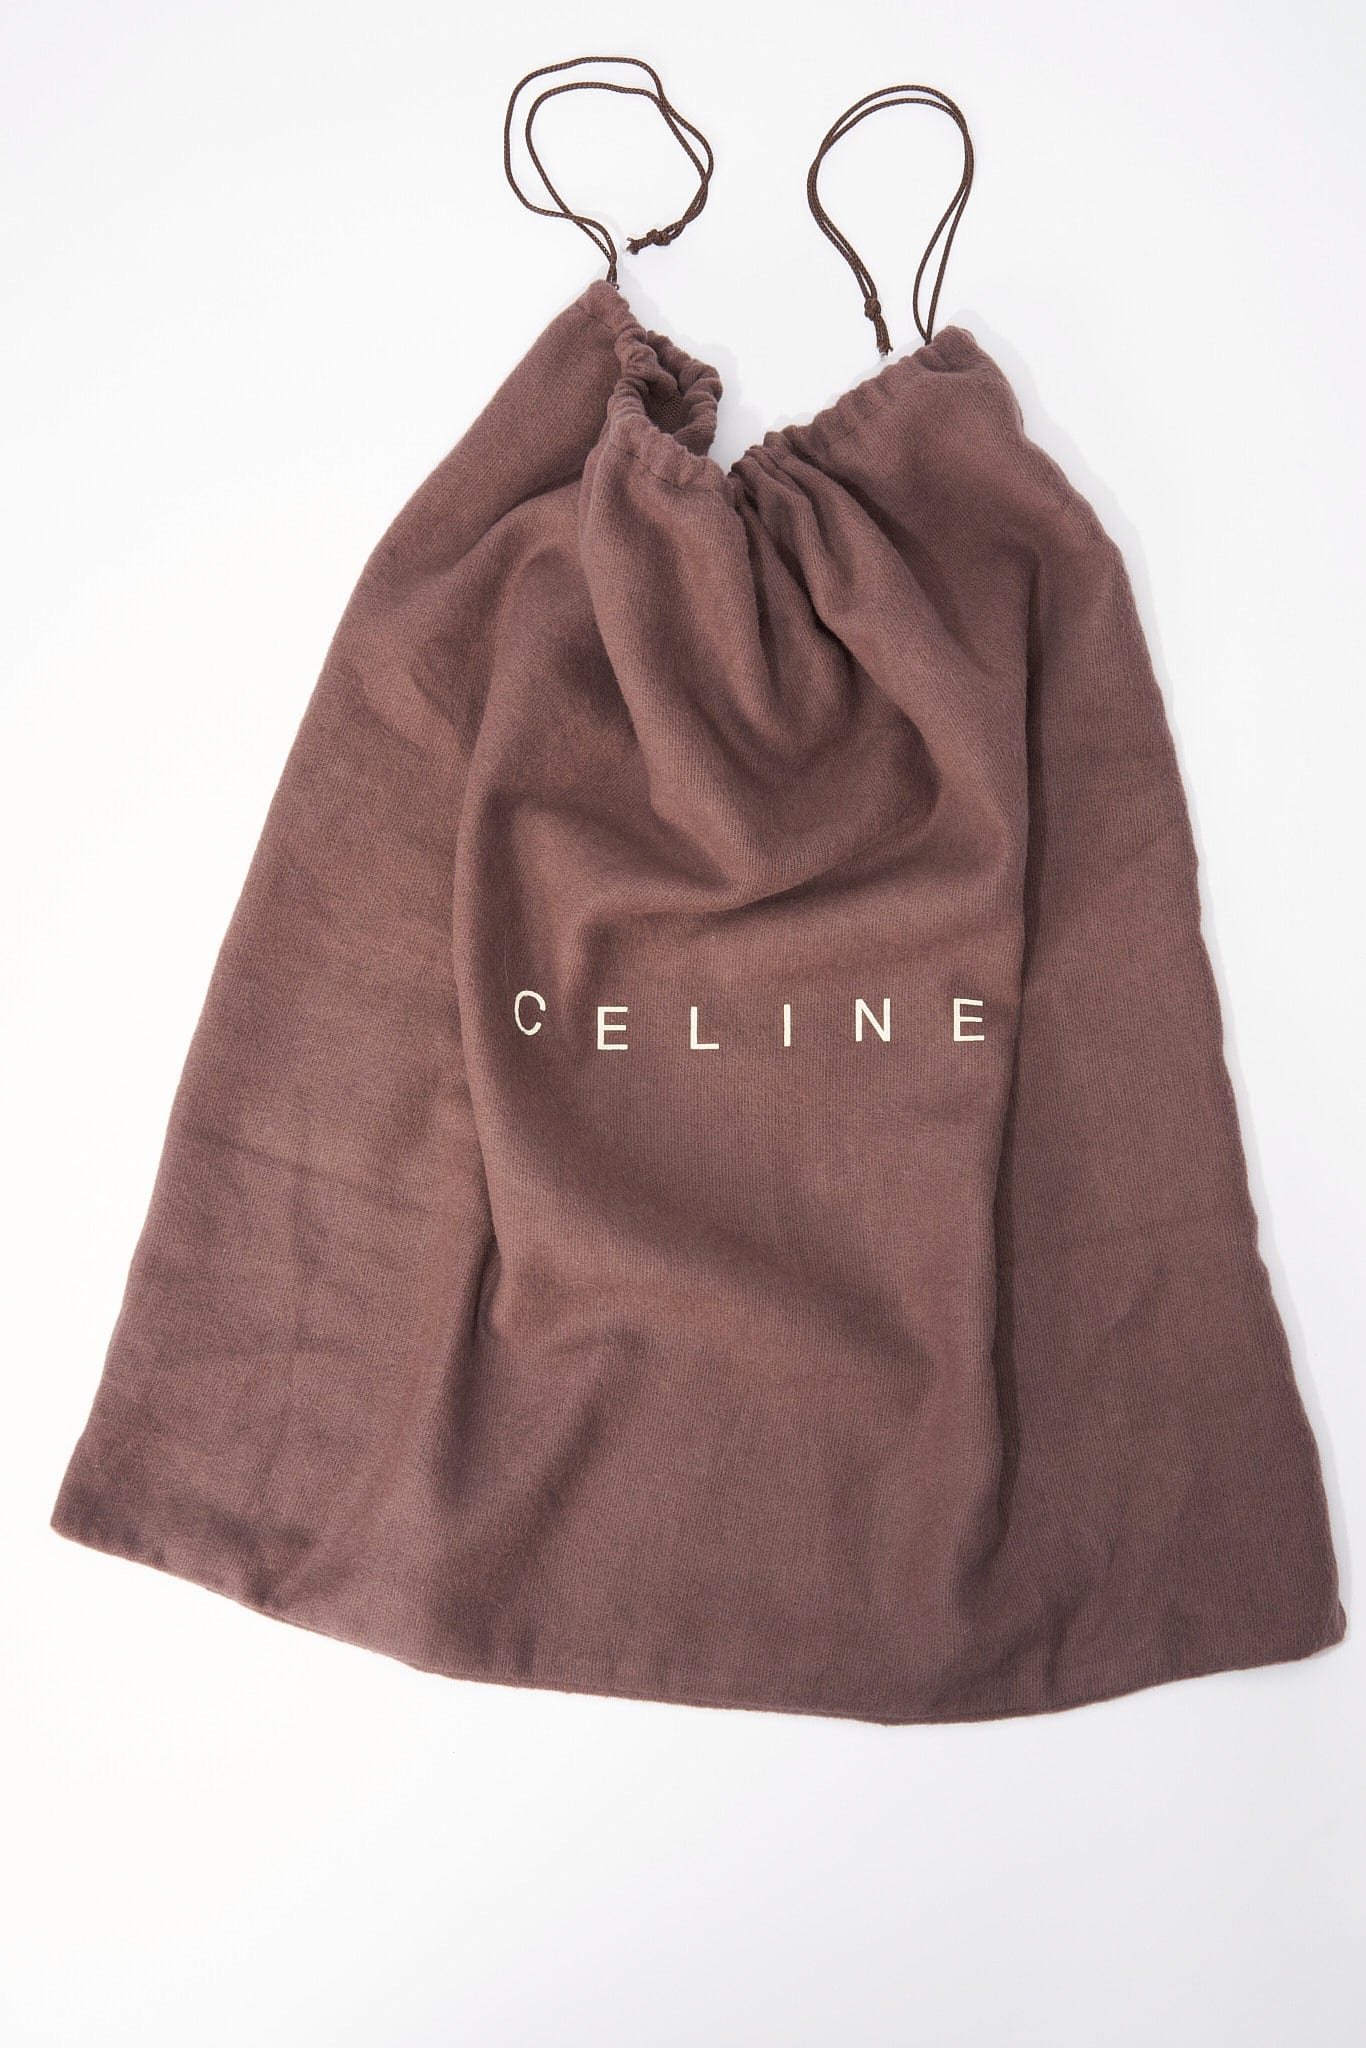 Vintage Celine Tote Bag